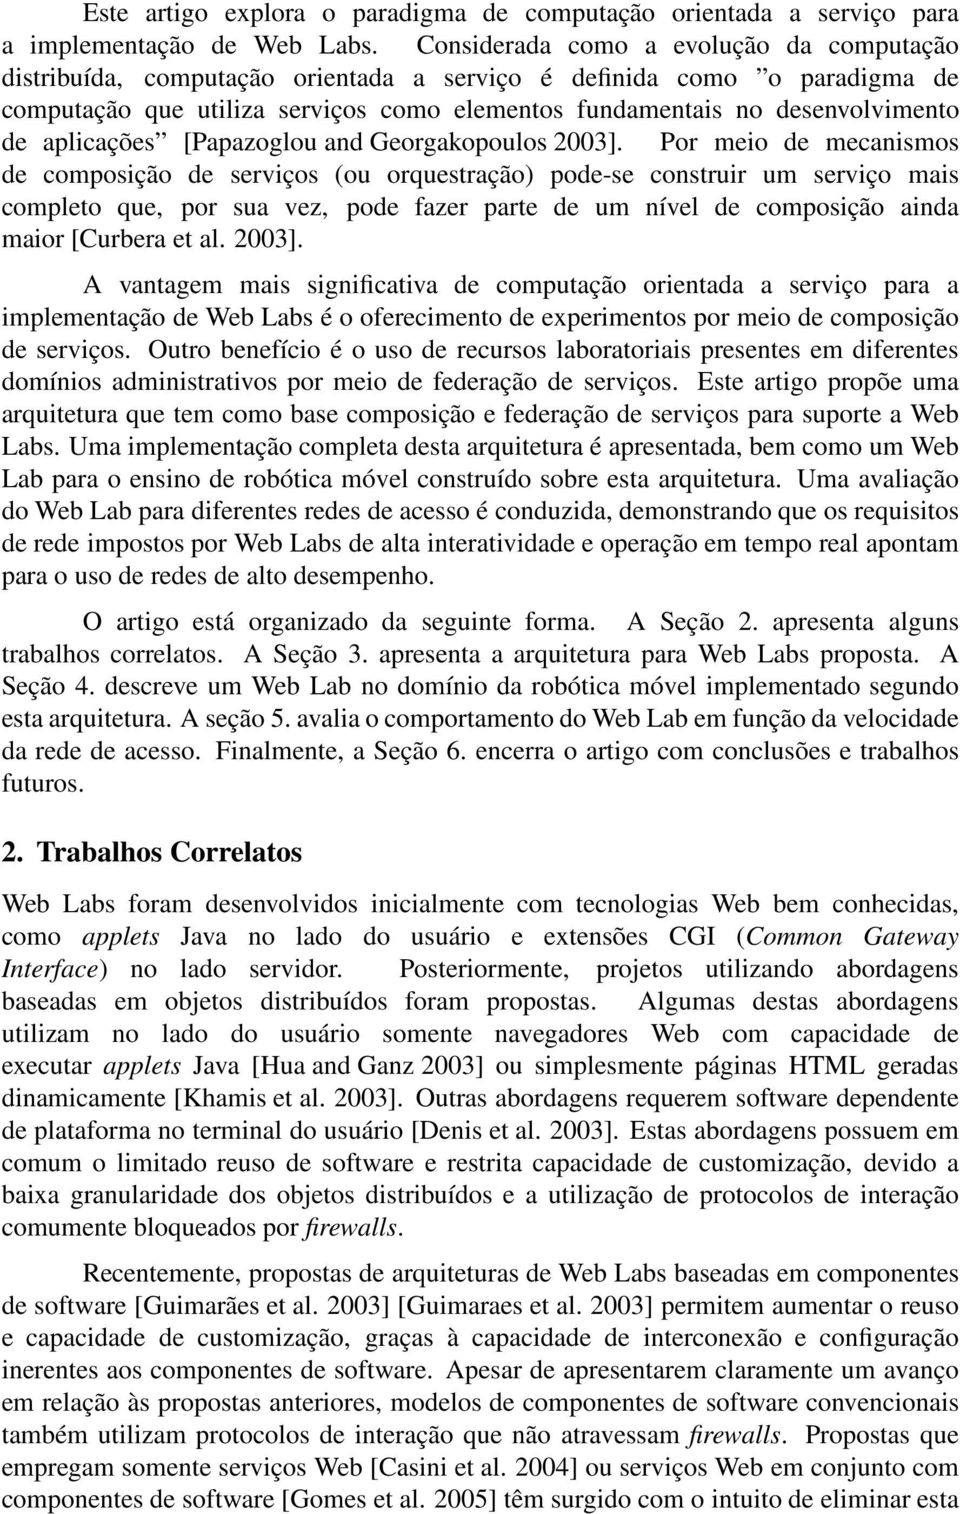 aplicações [Papazoglou and Georgakopoulos 2003].